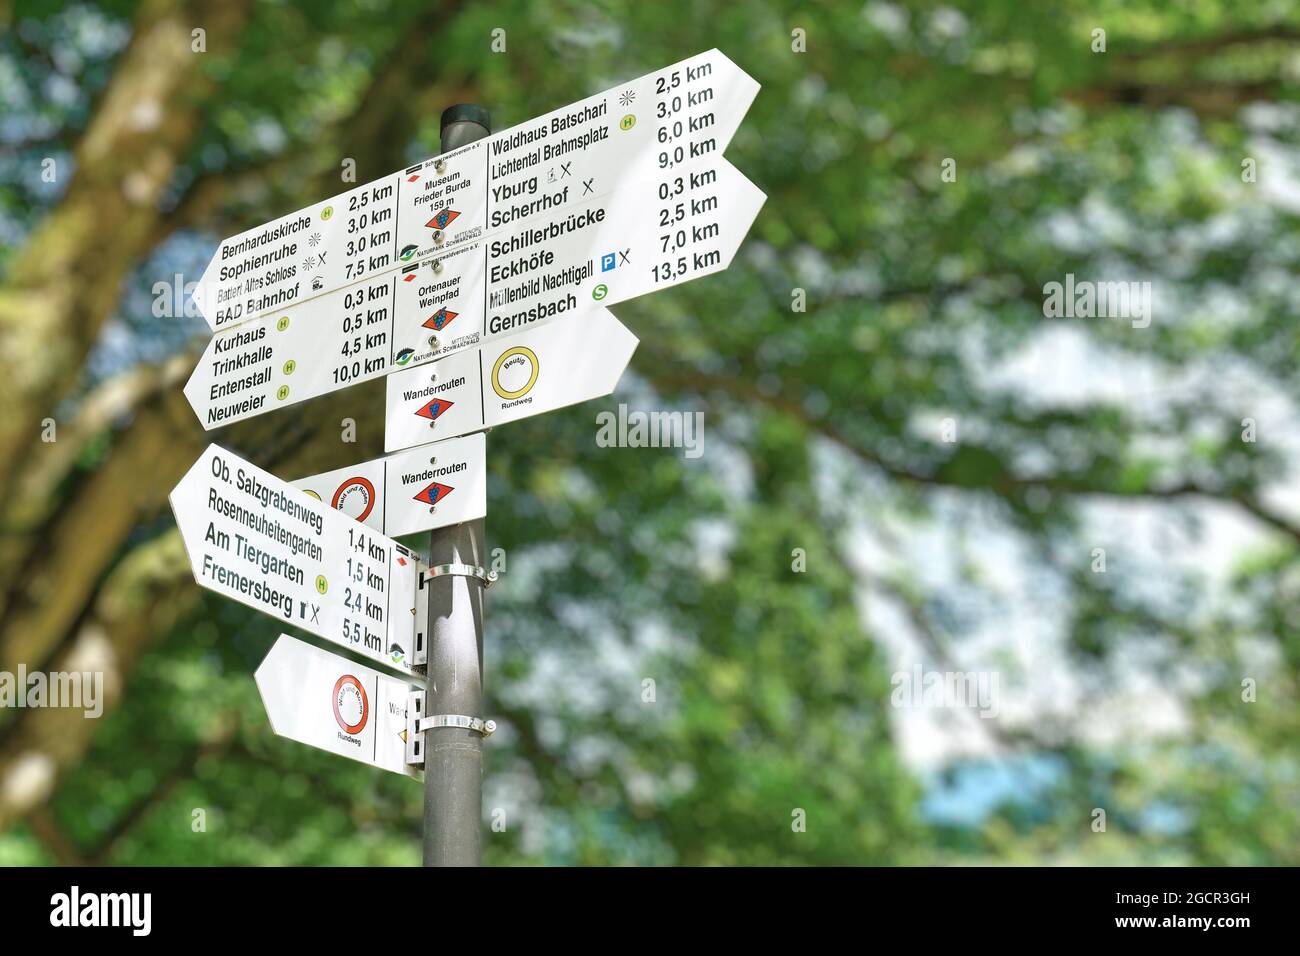 Baden-Baden, Alemania - 2021 de julio: Señal con señales que muestran las direcciones y la distancia a varios lugares de interés turístico en el sitio del patrimonio mundial Foto de stock